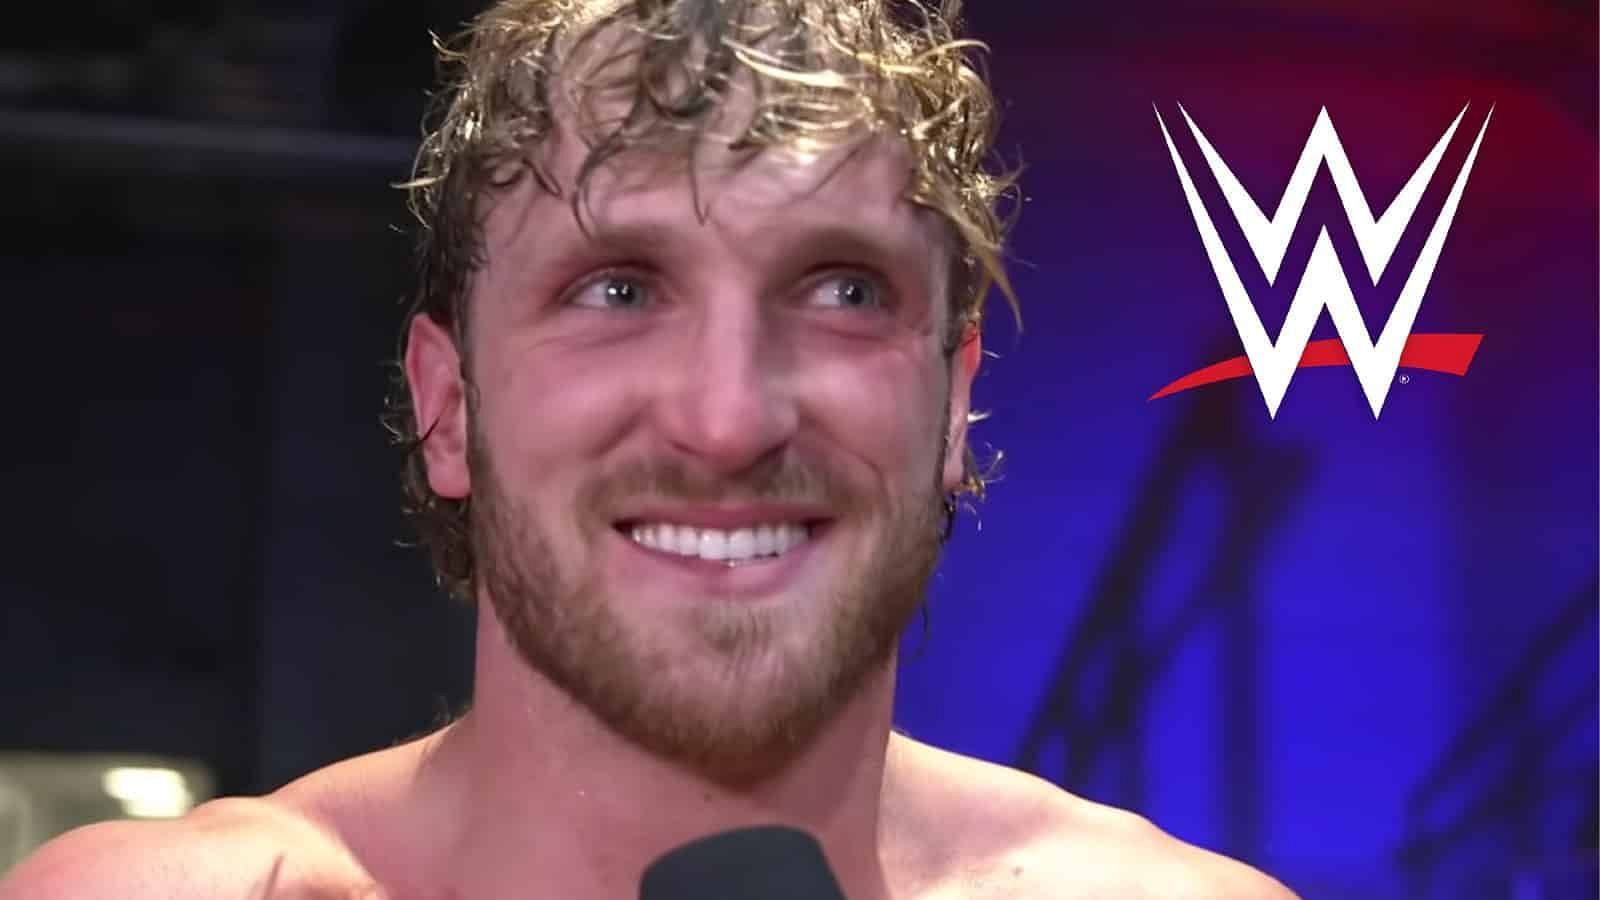 Logan Paul made his WWE debut at WrestleMania